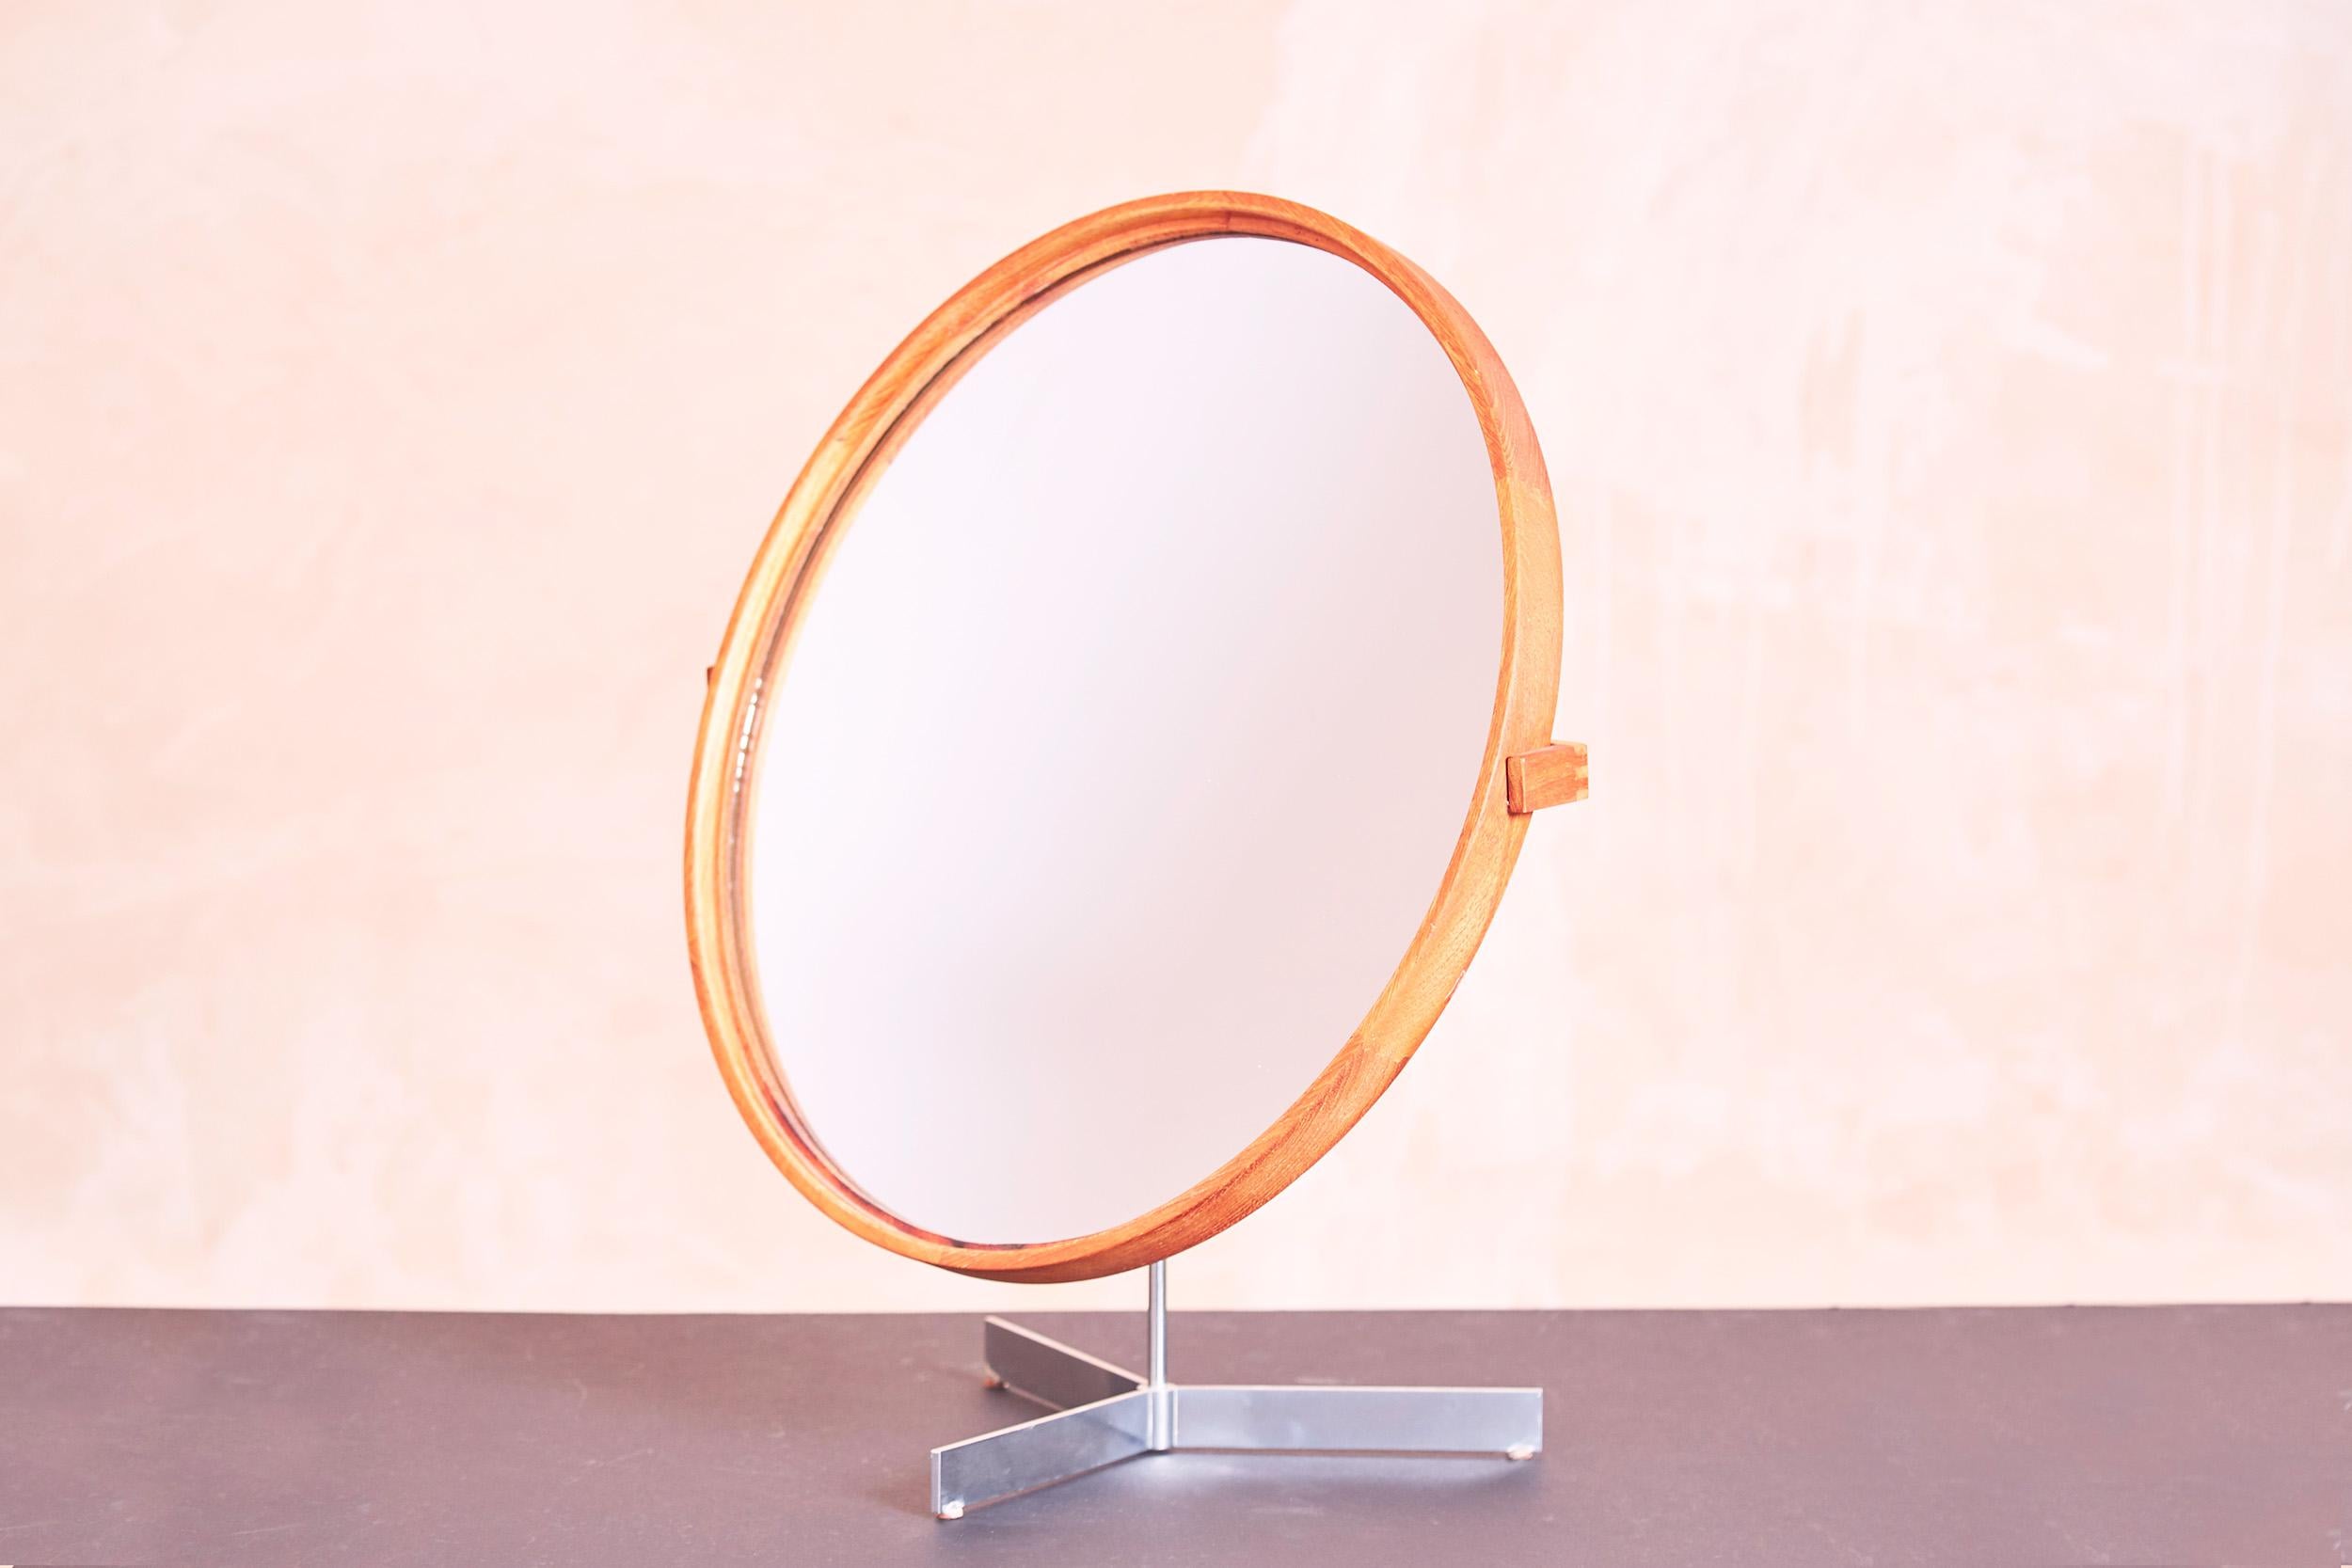 Un miroir de table par Luxus Vittsjö Suède. 

1960s

Le miroir est construit avec un cadre en teck et un pied trépied en métal. Le miroir est orientable dans toutes les directions et peut être pivoté vers le haut.

Conçu par les frères Uno et